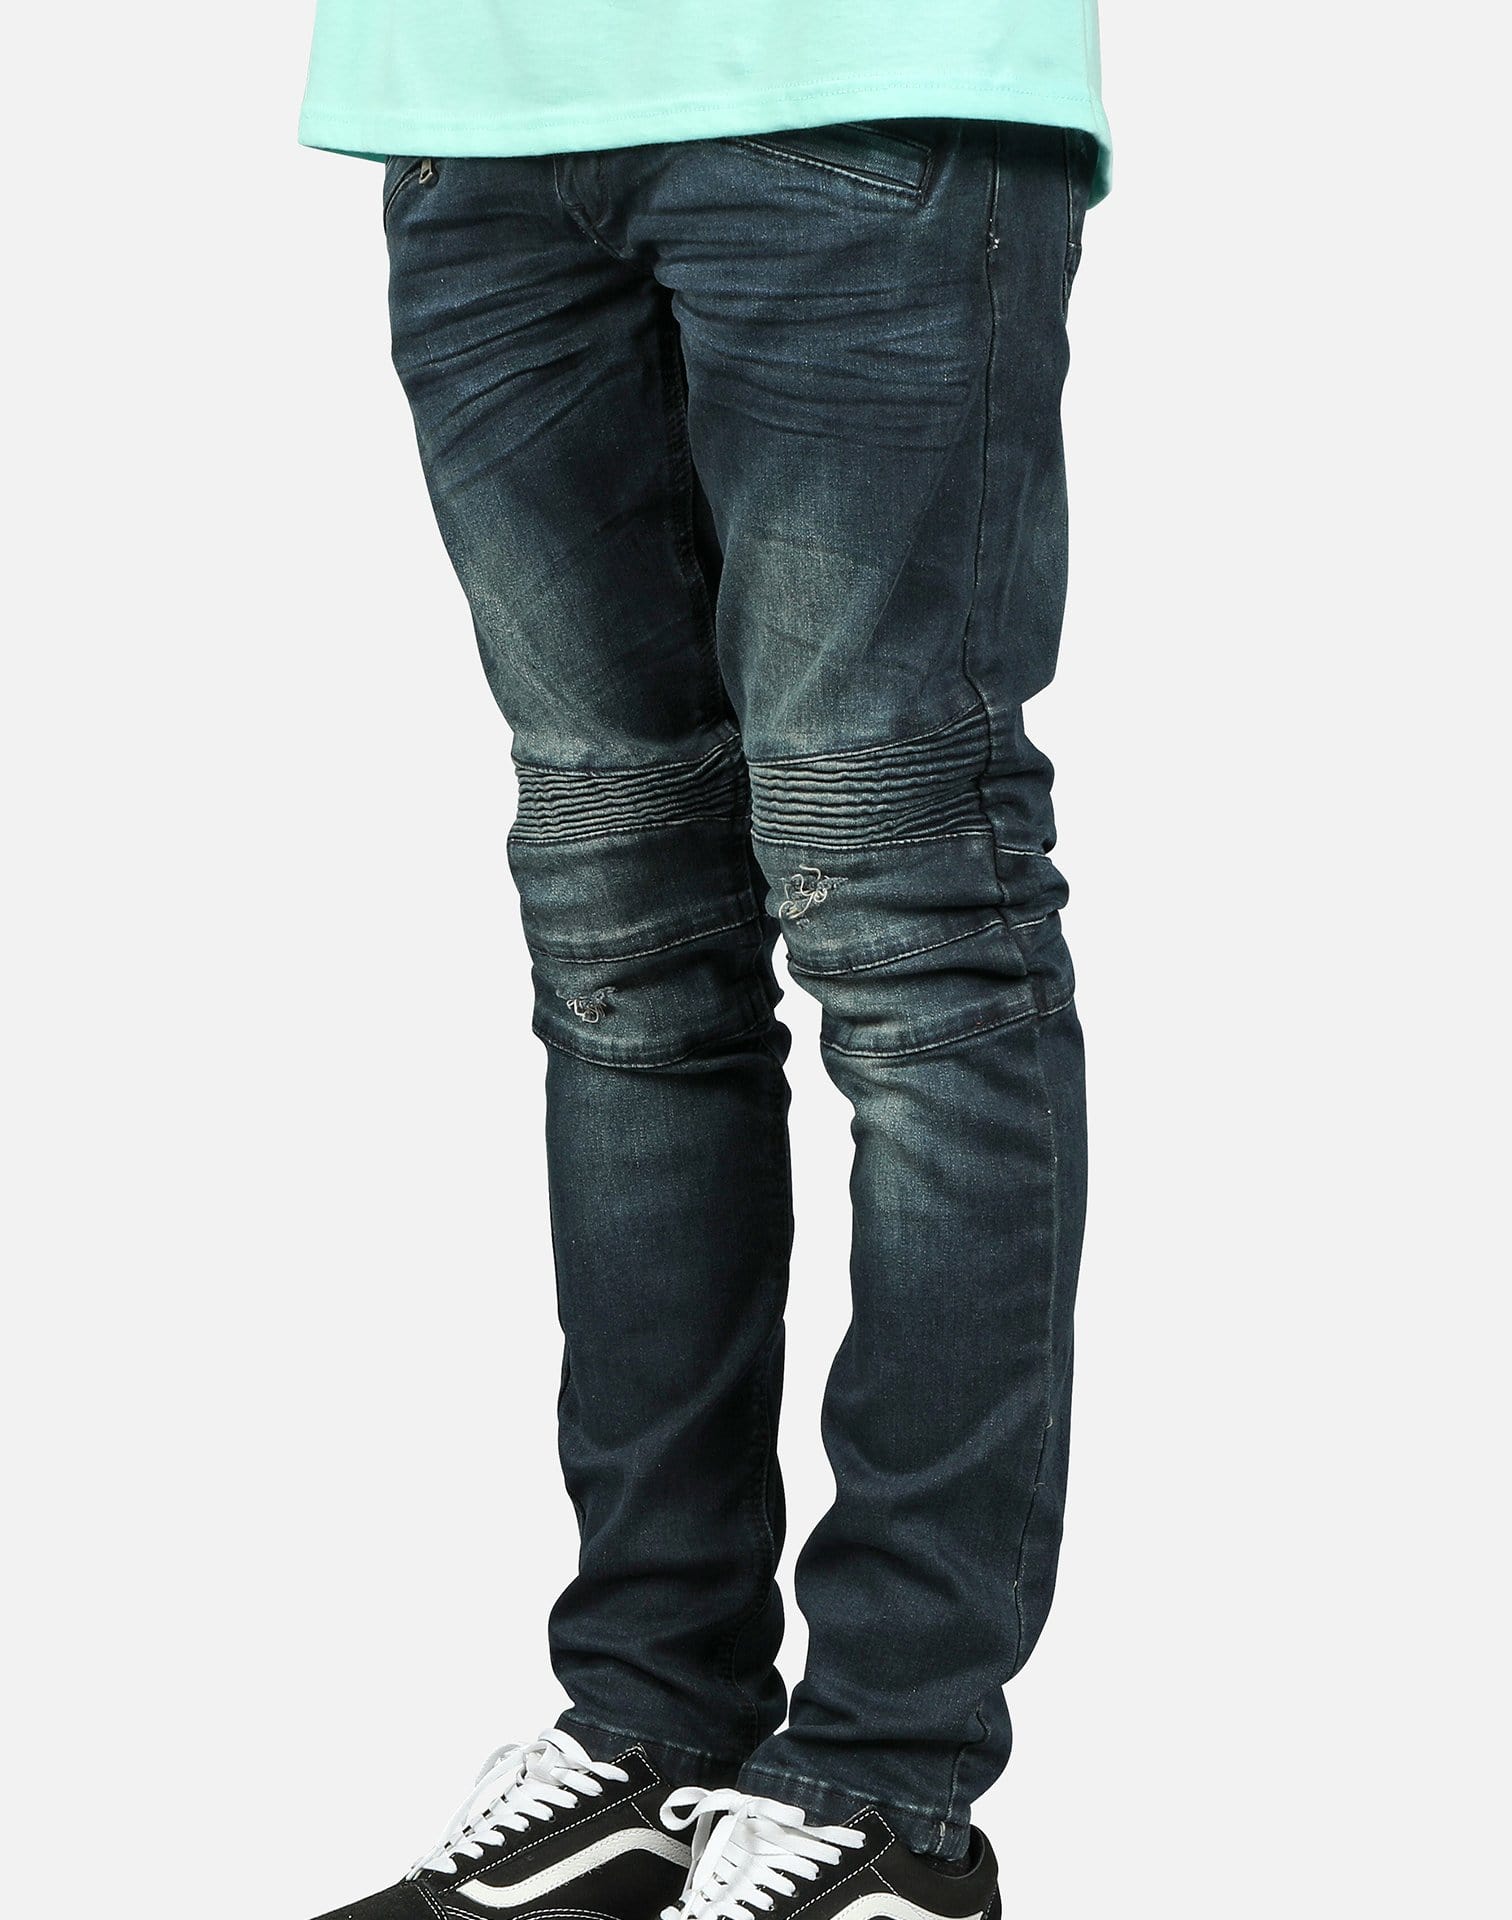 Kilogram Inc. Men's Zip Pocket Moto Jeans